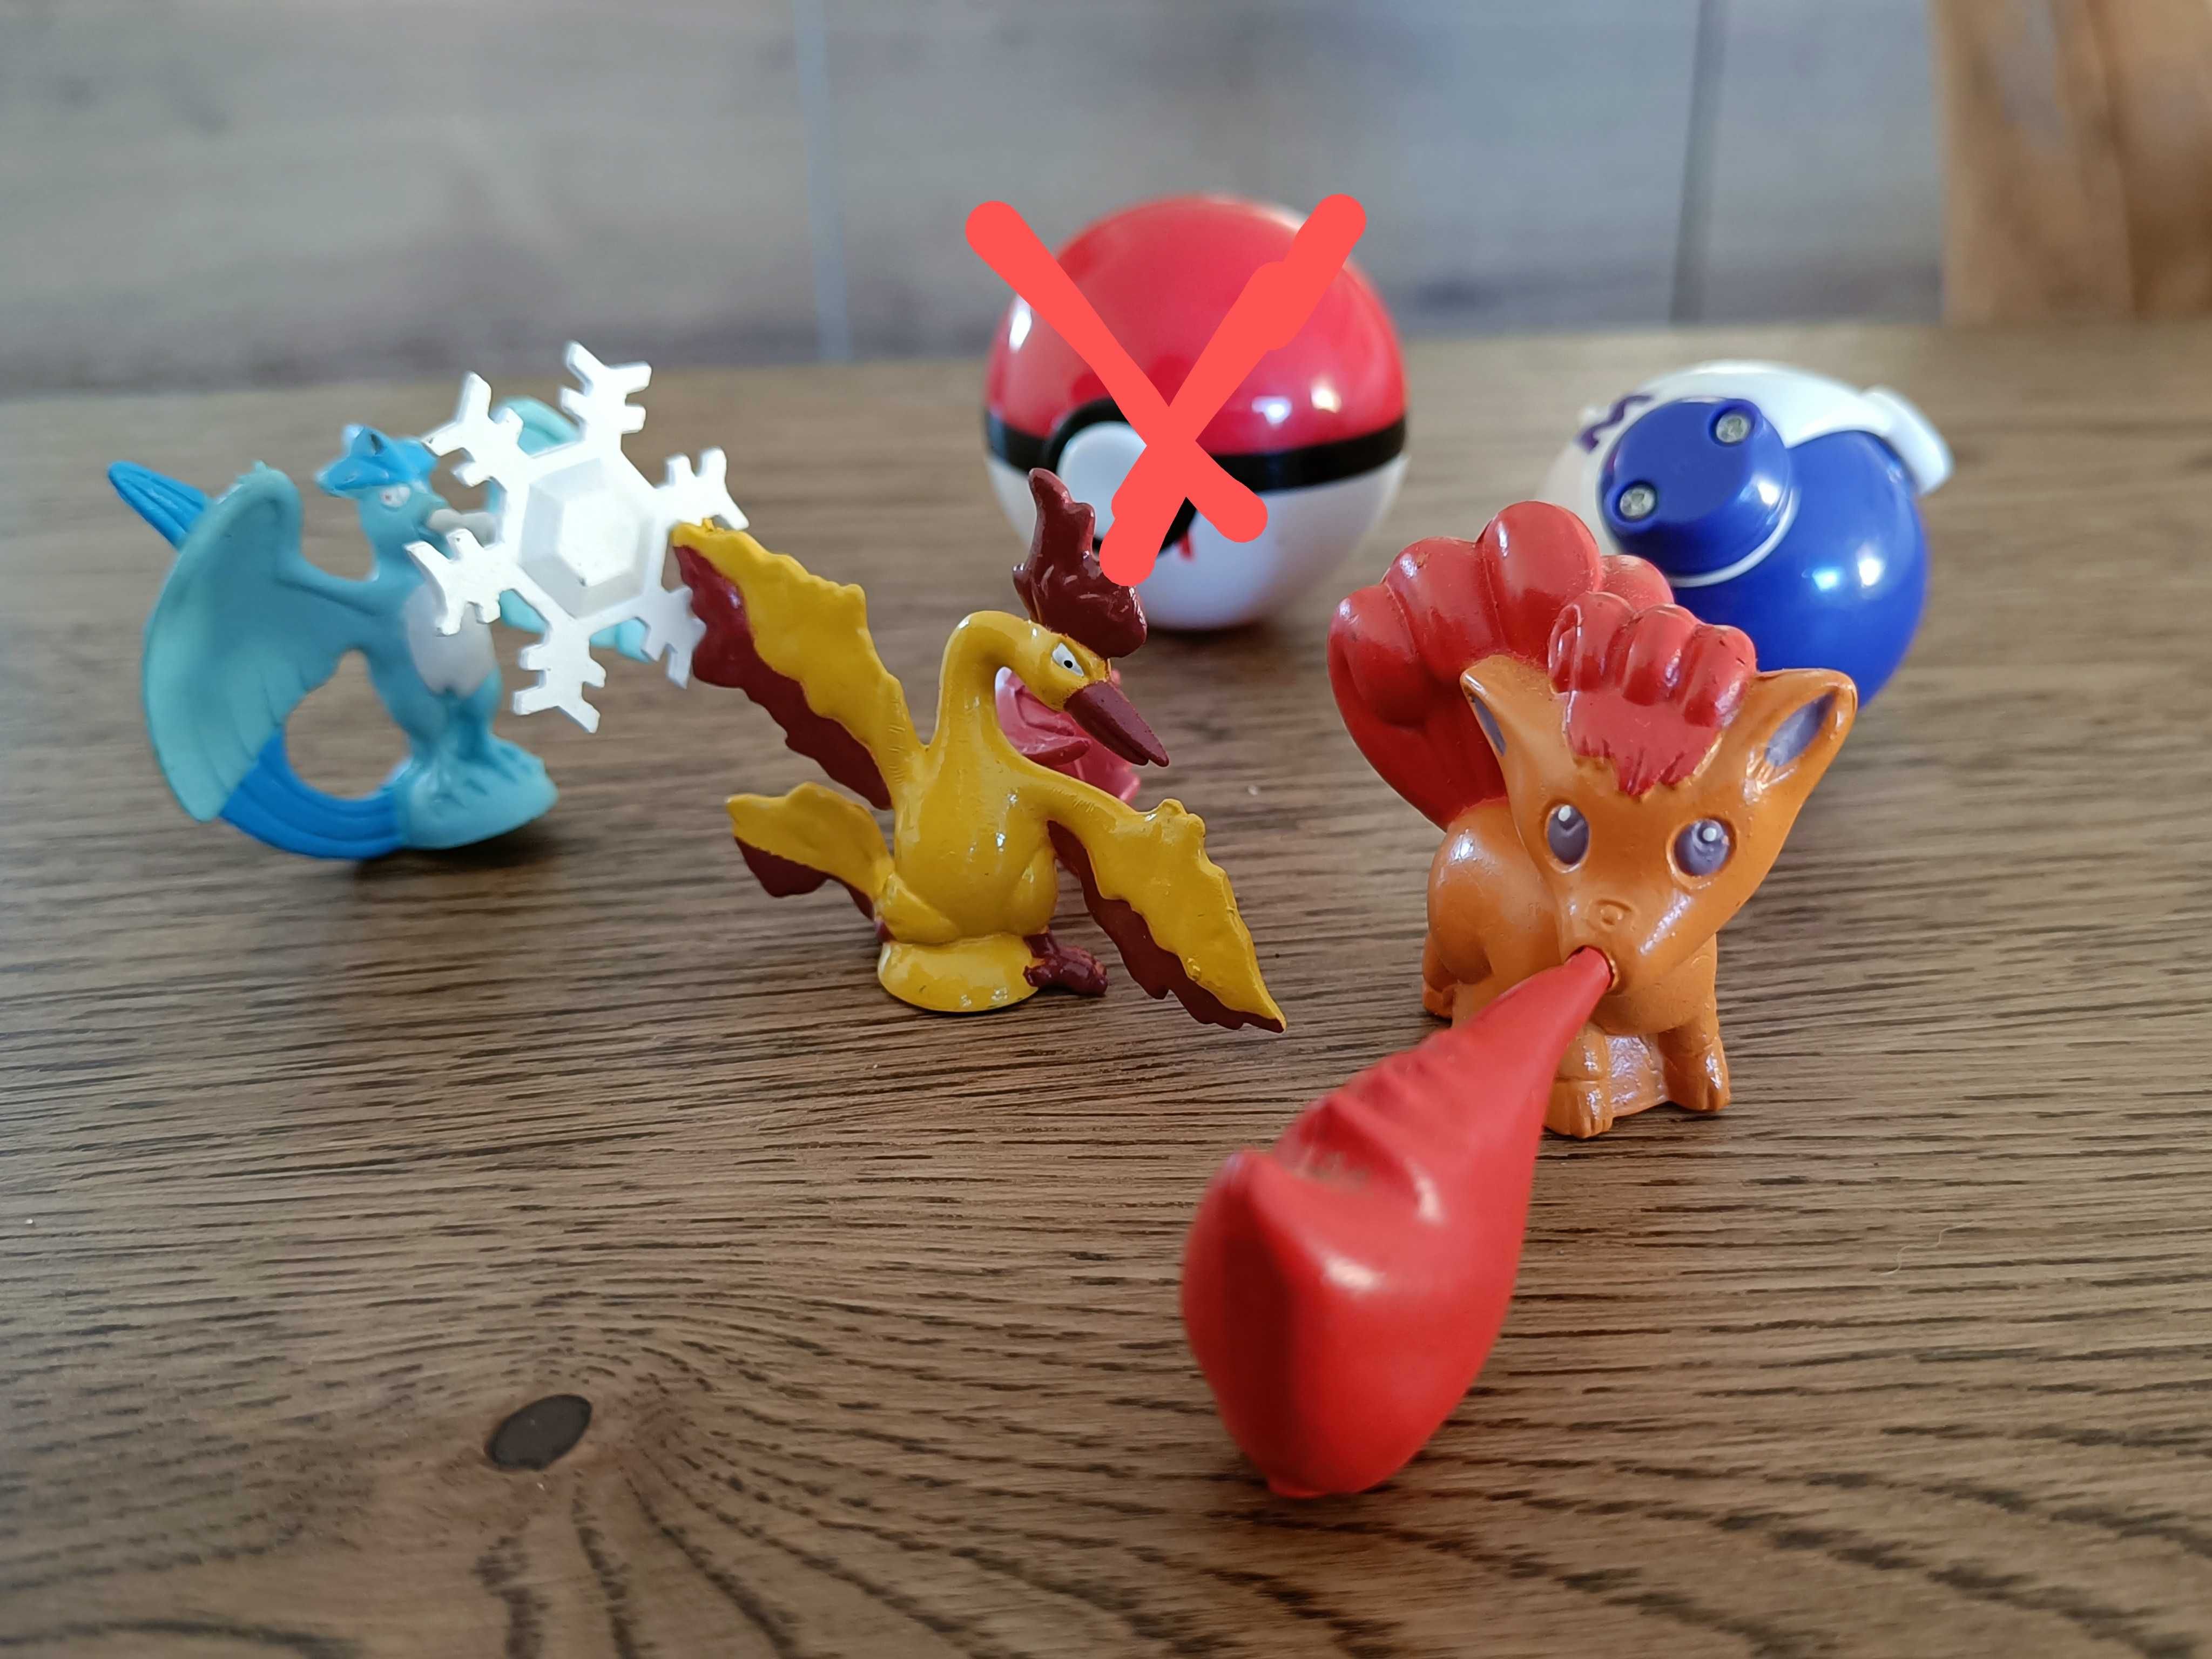 Bonecos Pokemon e pokebolas